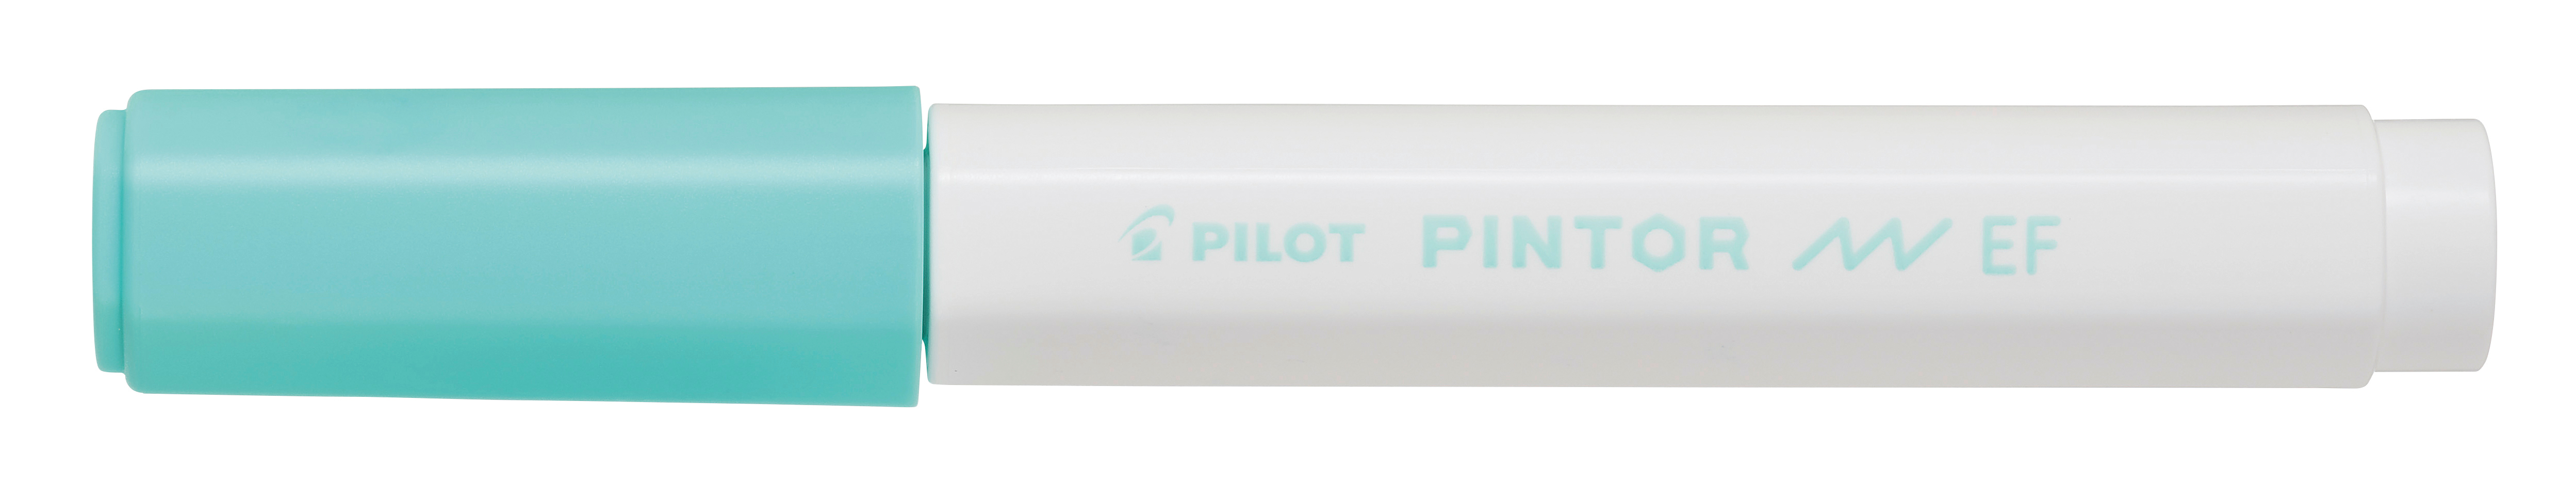 PILOT Marker Pintor 0.7mm SW-PT-EF-PG pastell vert